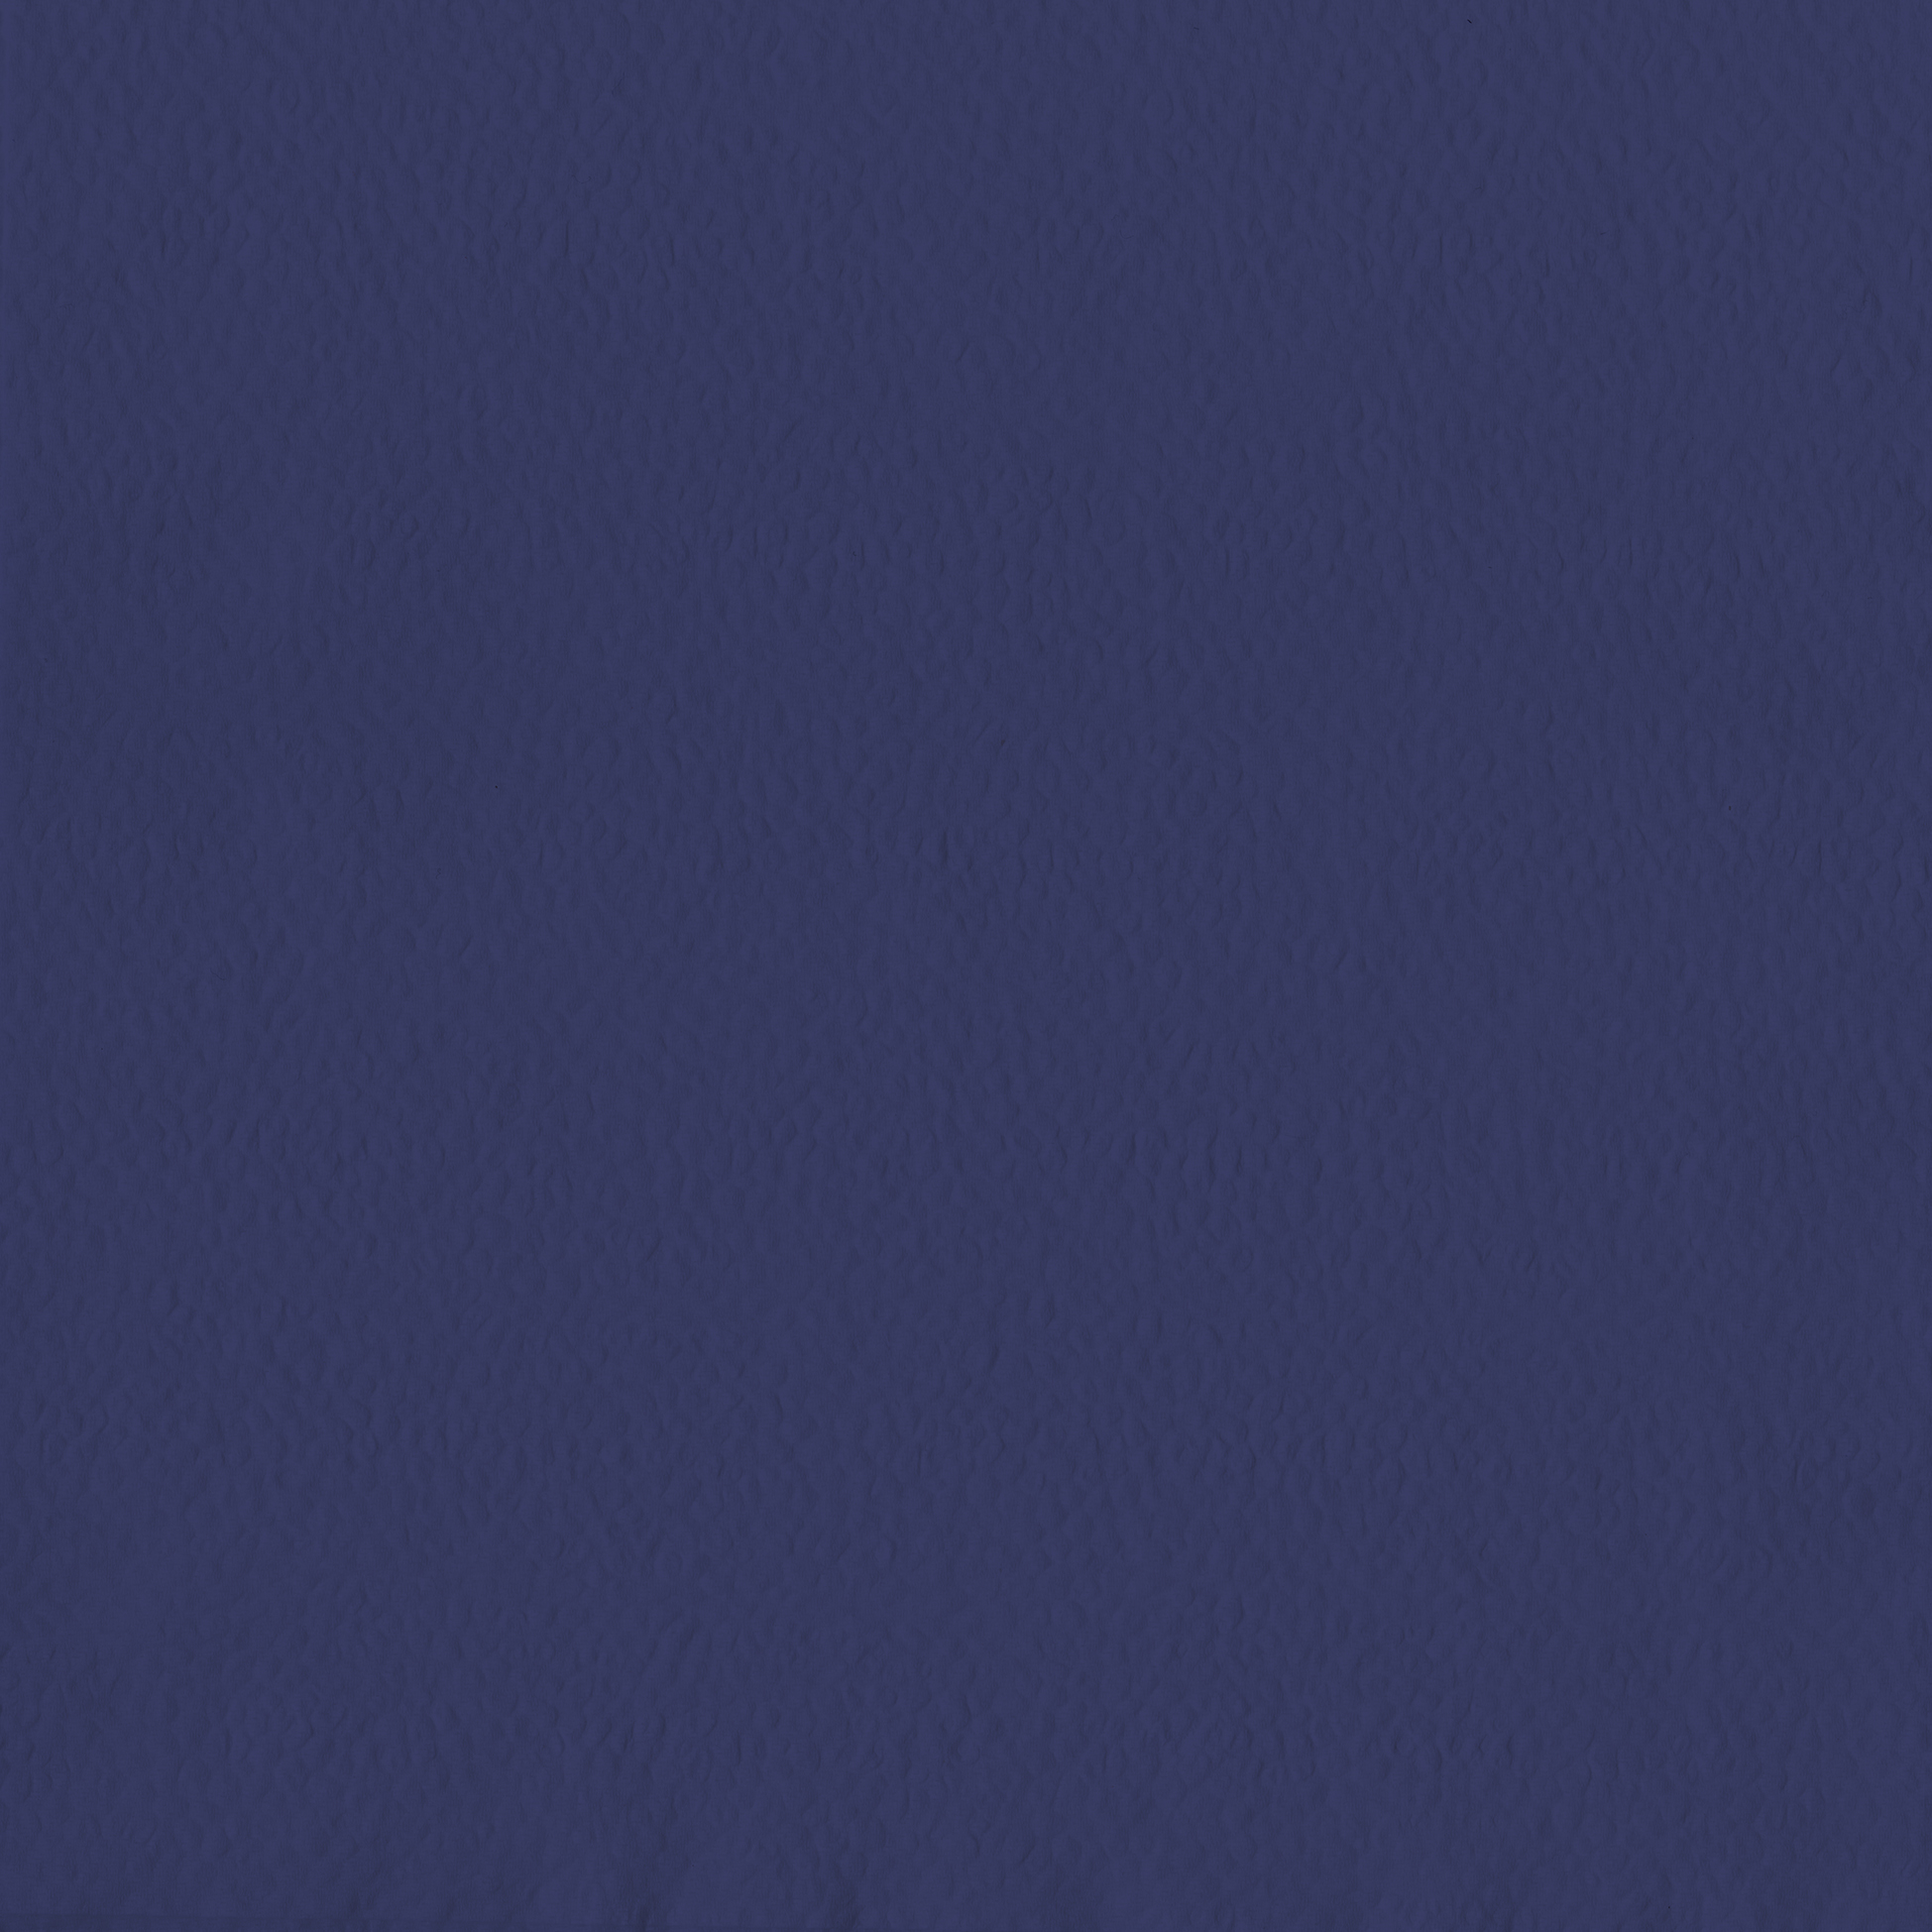 Zelltuchservietten 1/4 Falz, 33 x 33 cm, dunkelblau